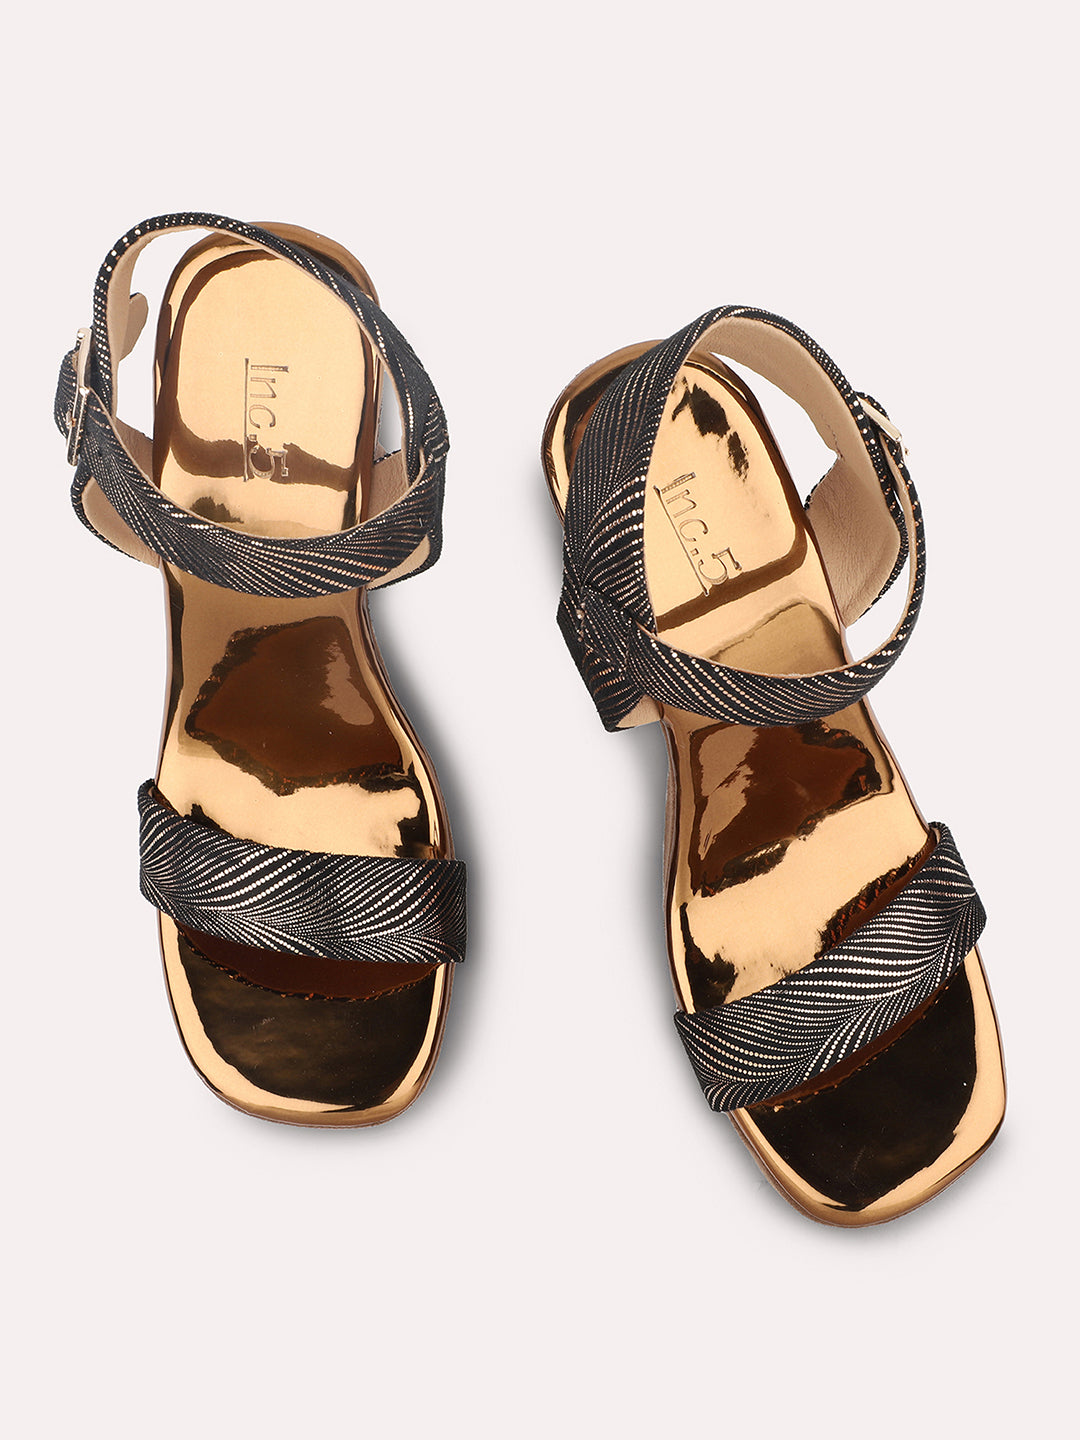 Buy Now Women Antique Textured Platform Heels – Inc5 Shoes